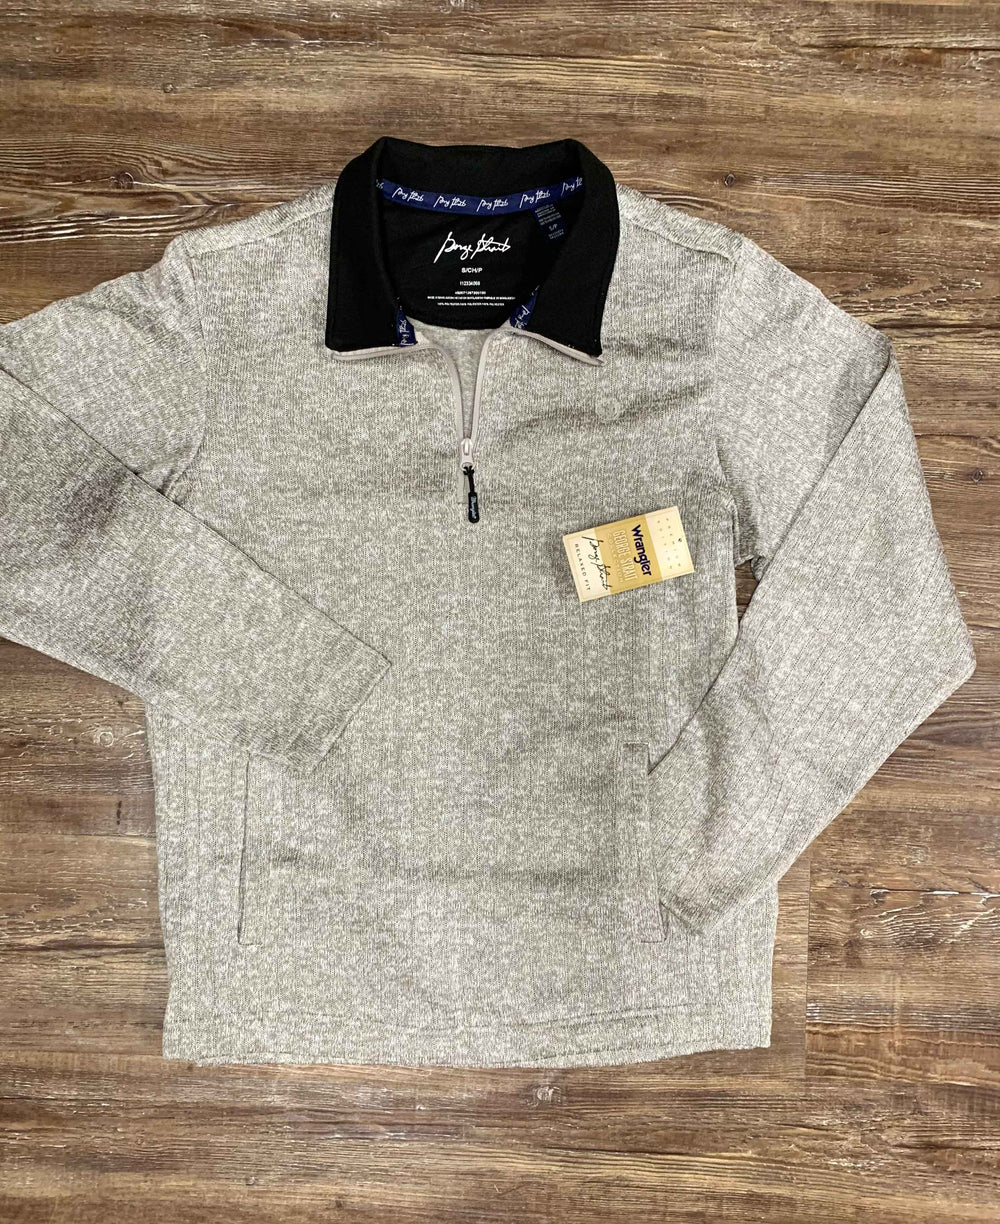 George Strait heather 1/4 zip pullover